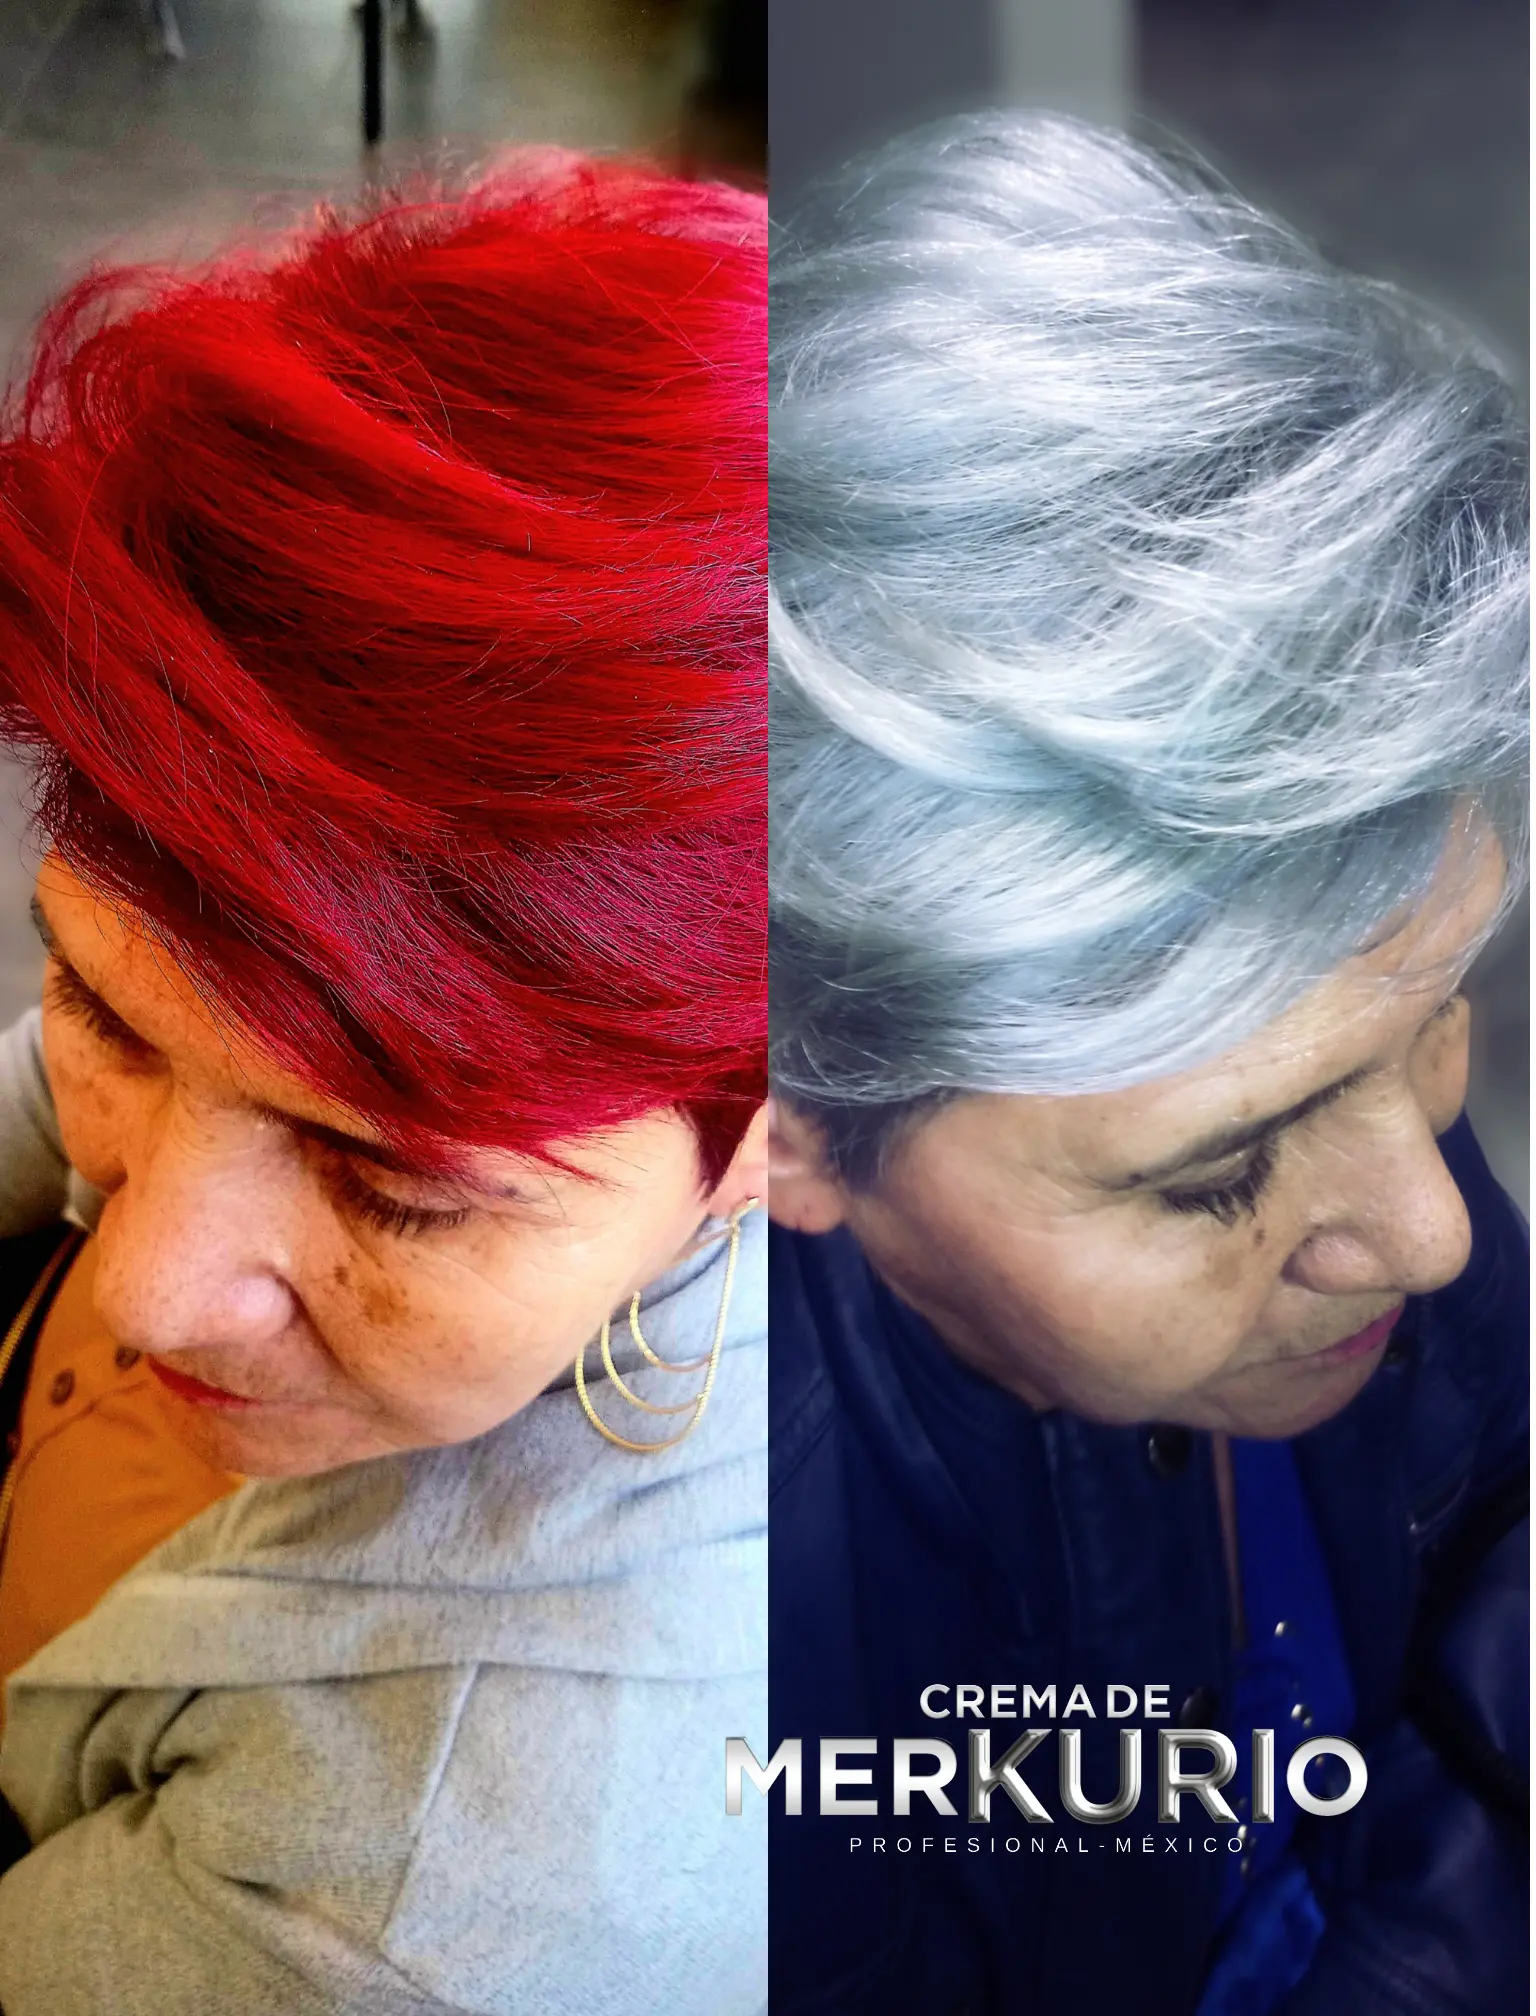 Crema de MERKURIO Rojos antes y después8